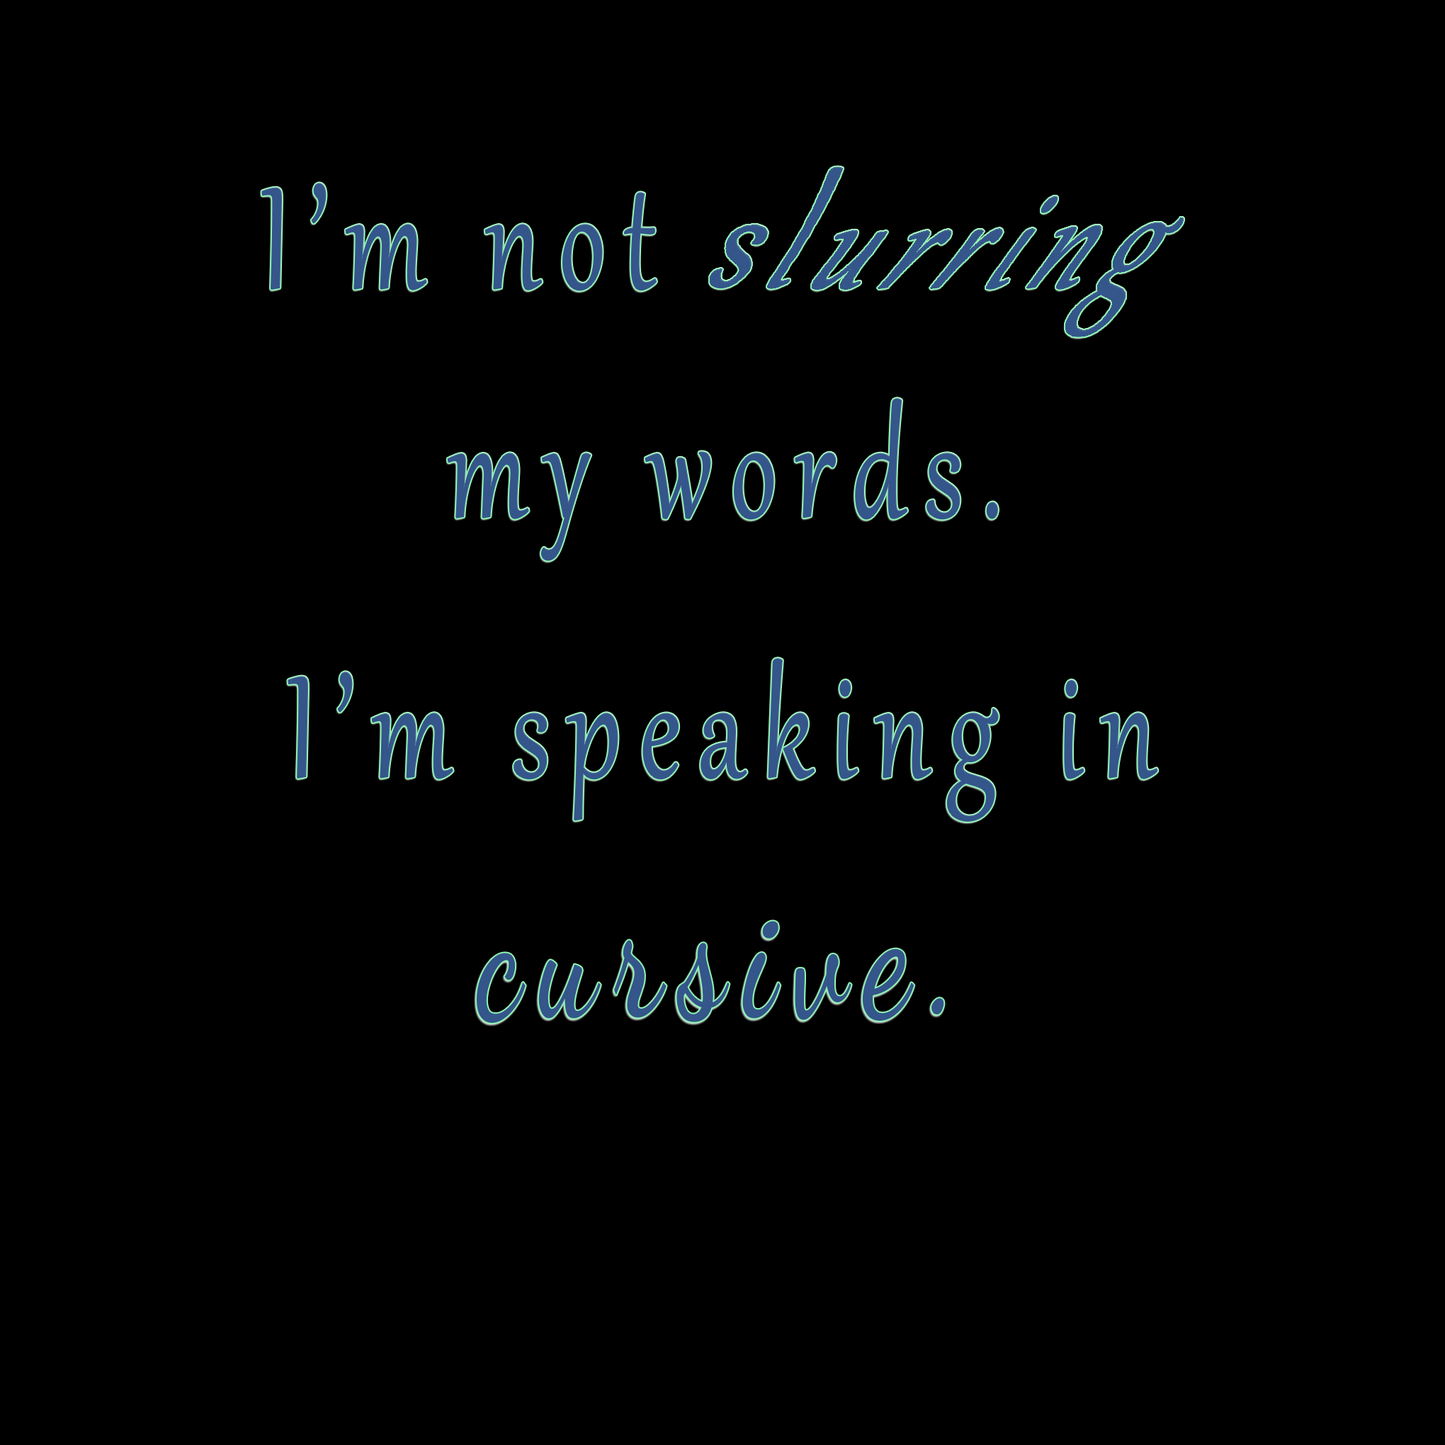 "I'm not slurring. I'm speaking in cursive."